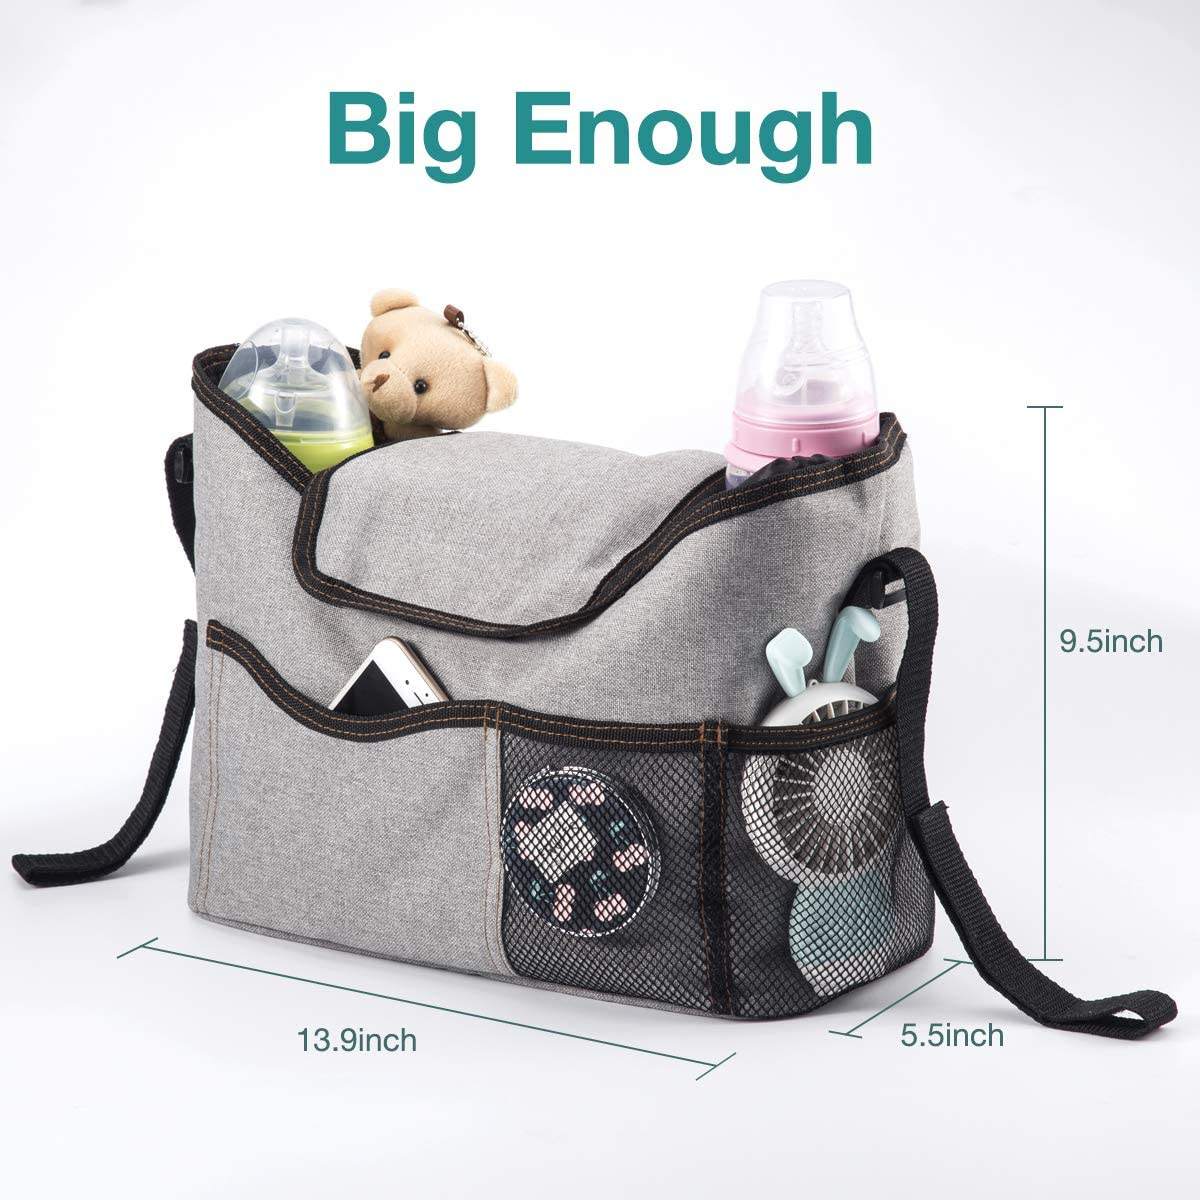 Bolsa de pañales de gran capacidad, cochecito portátil, productos para bebés, bolsa de almacenamiento, organizador de pañales de alimentación con portabotellas